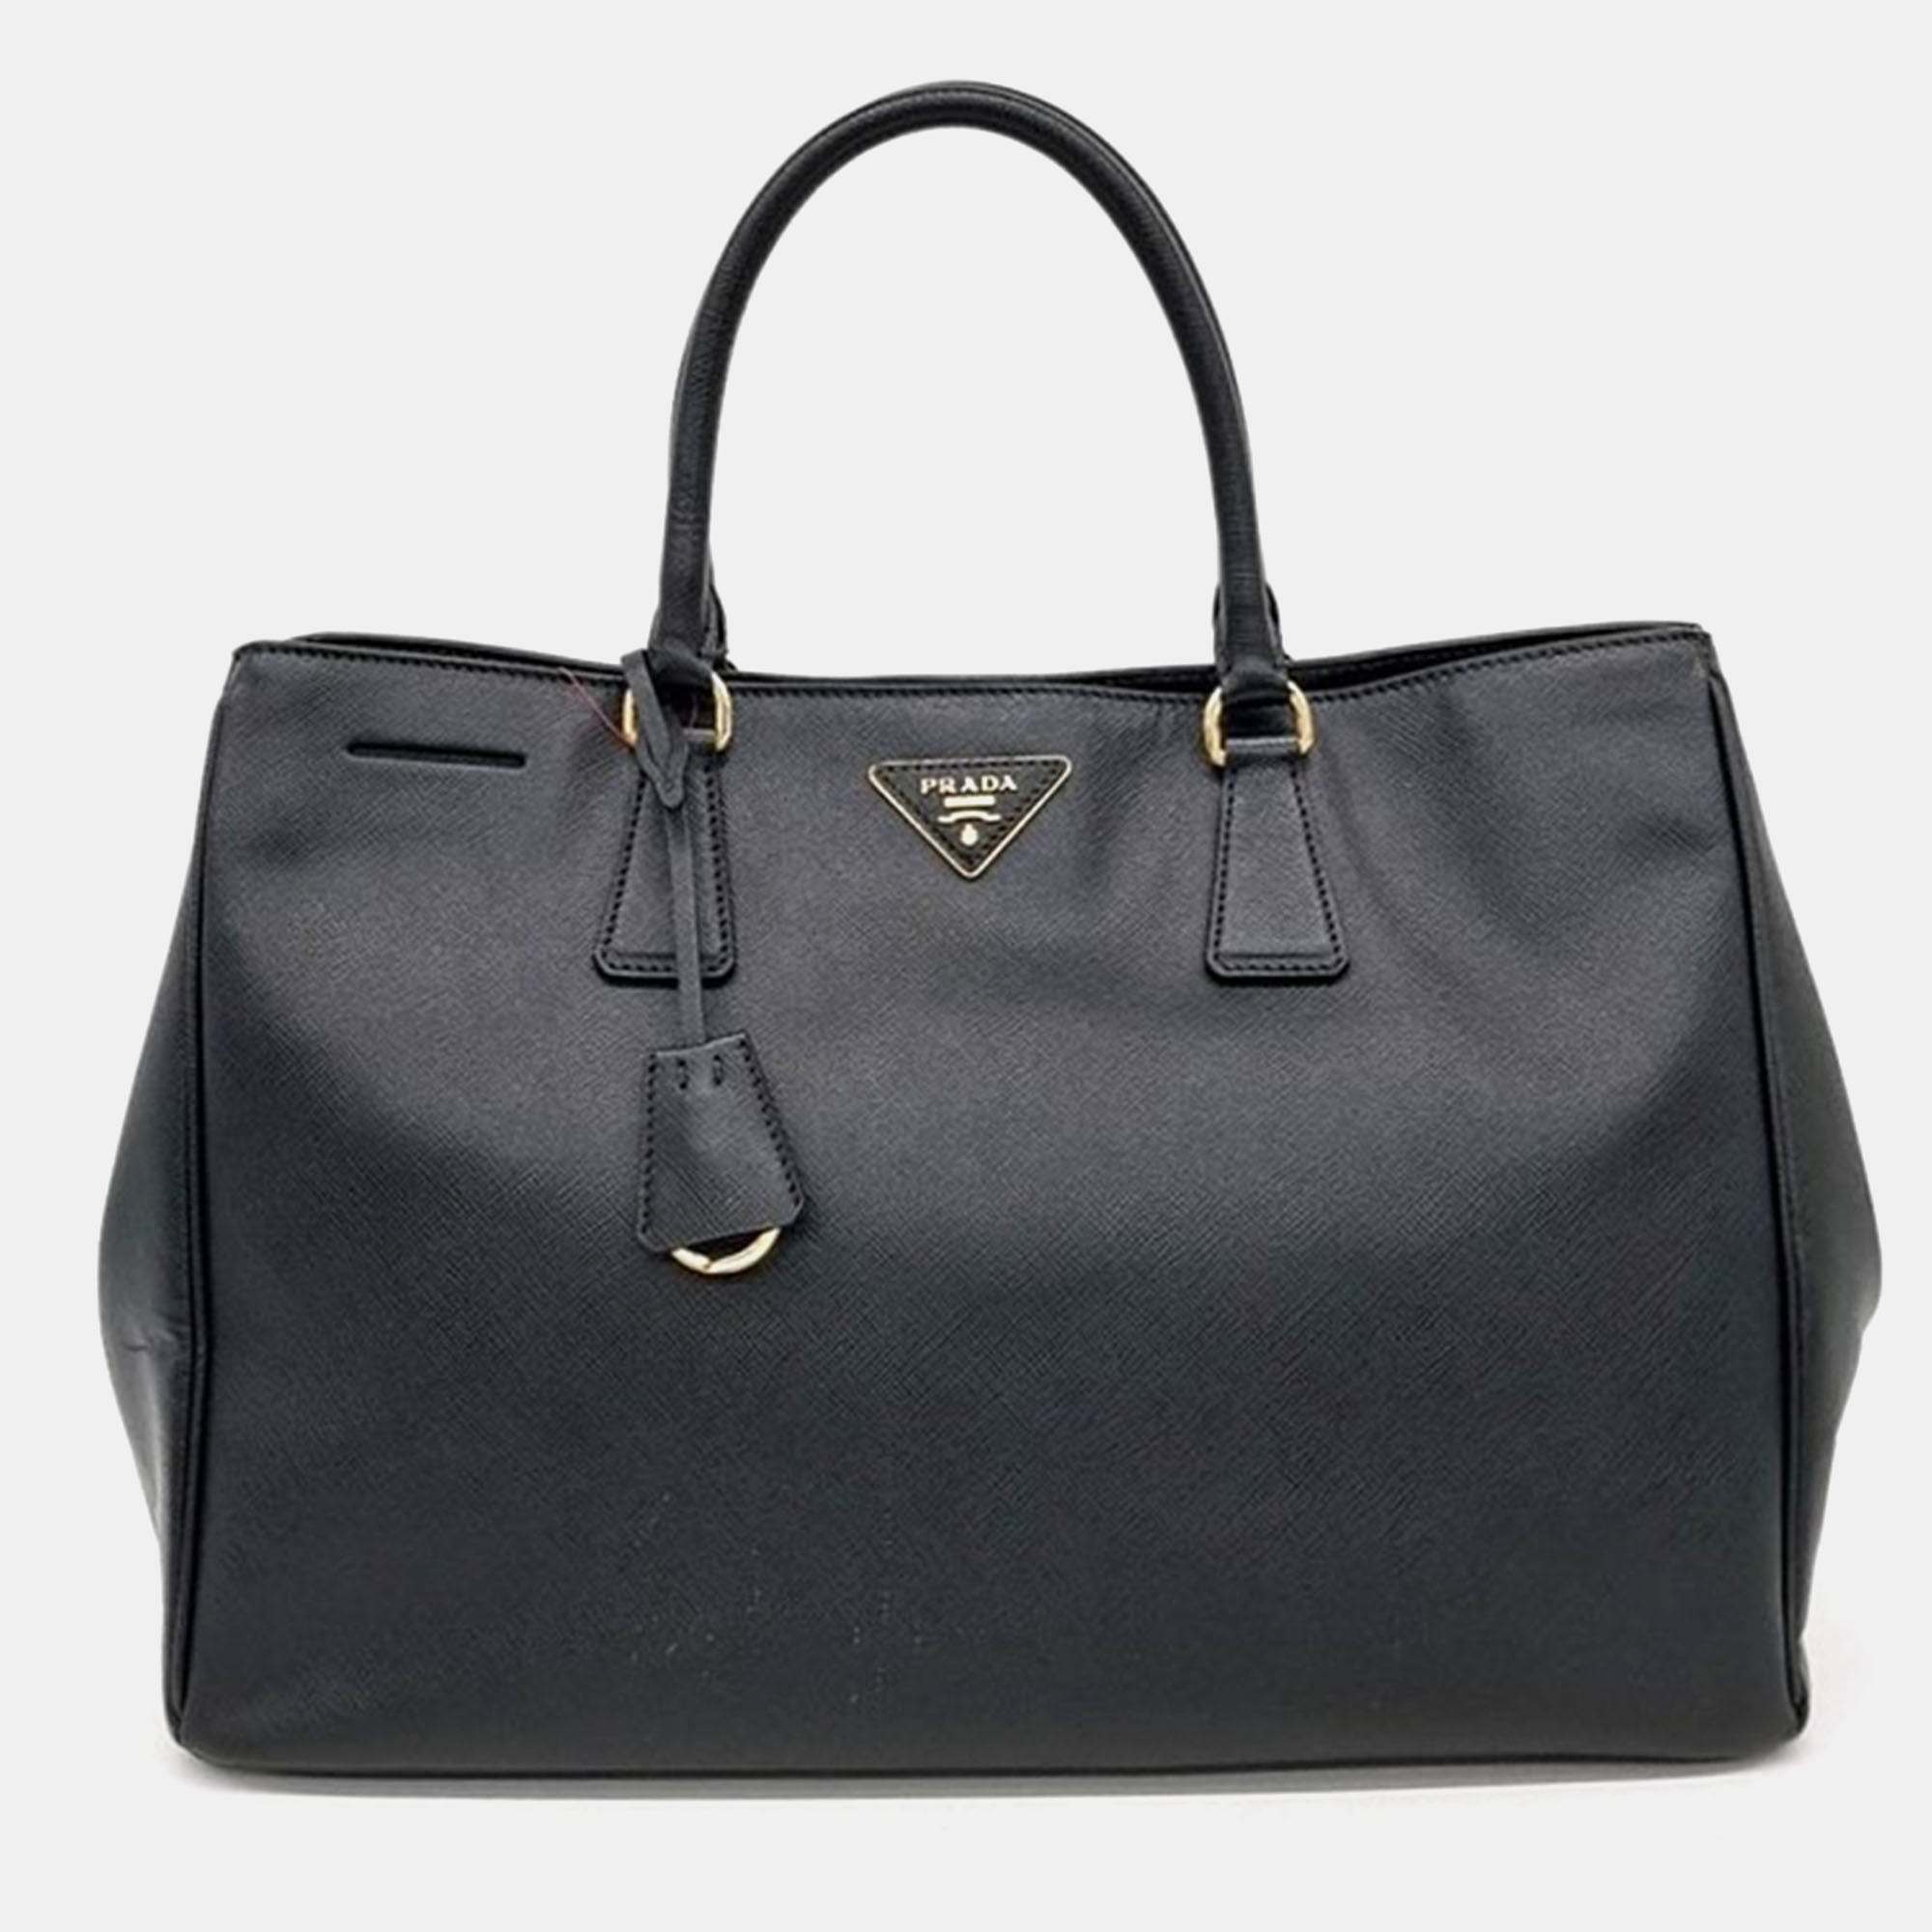 

Prada Saffiano Lux Tote Bag, Black